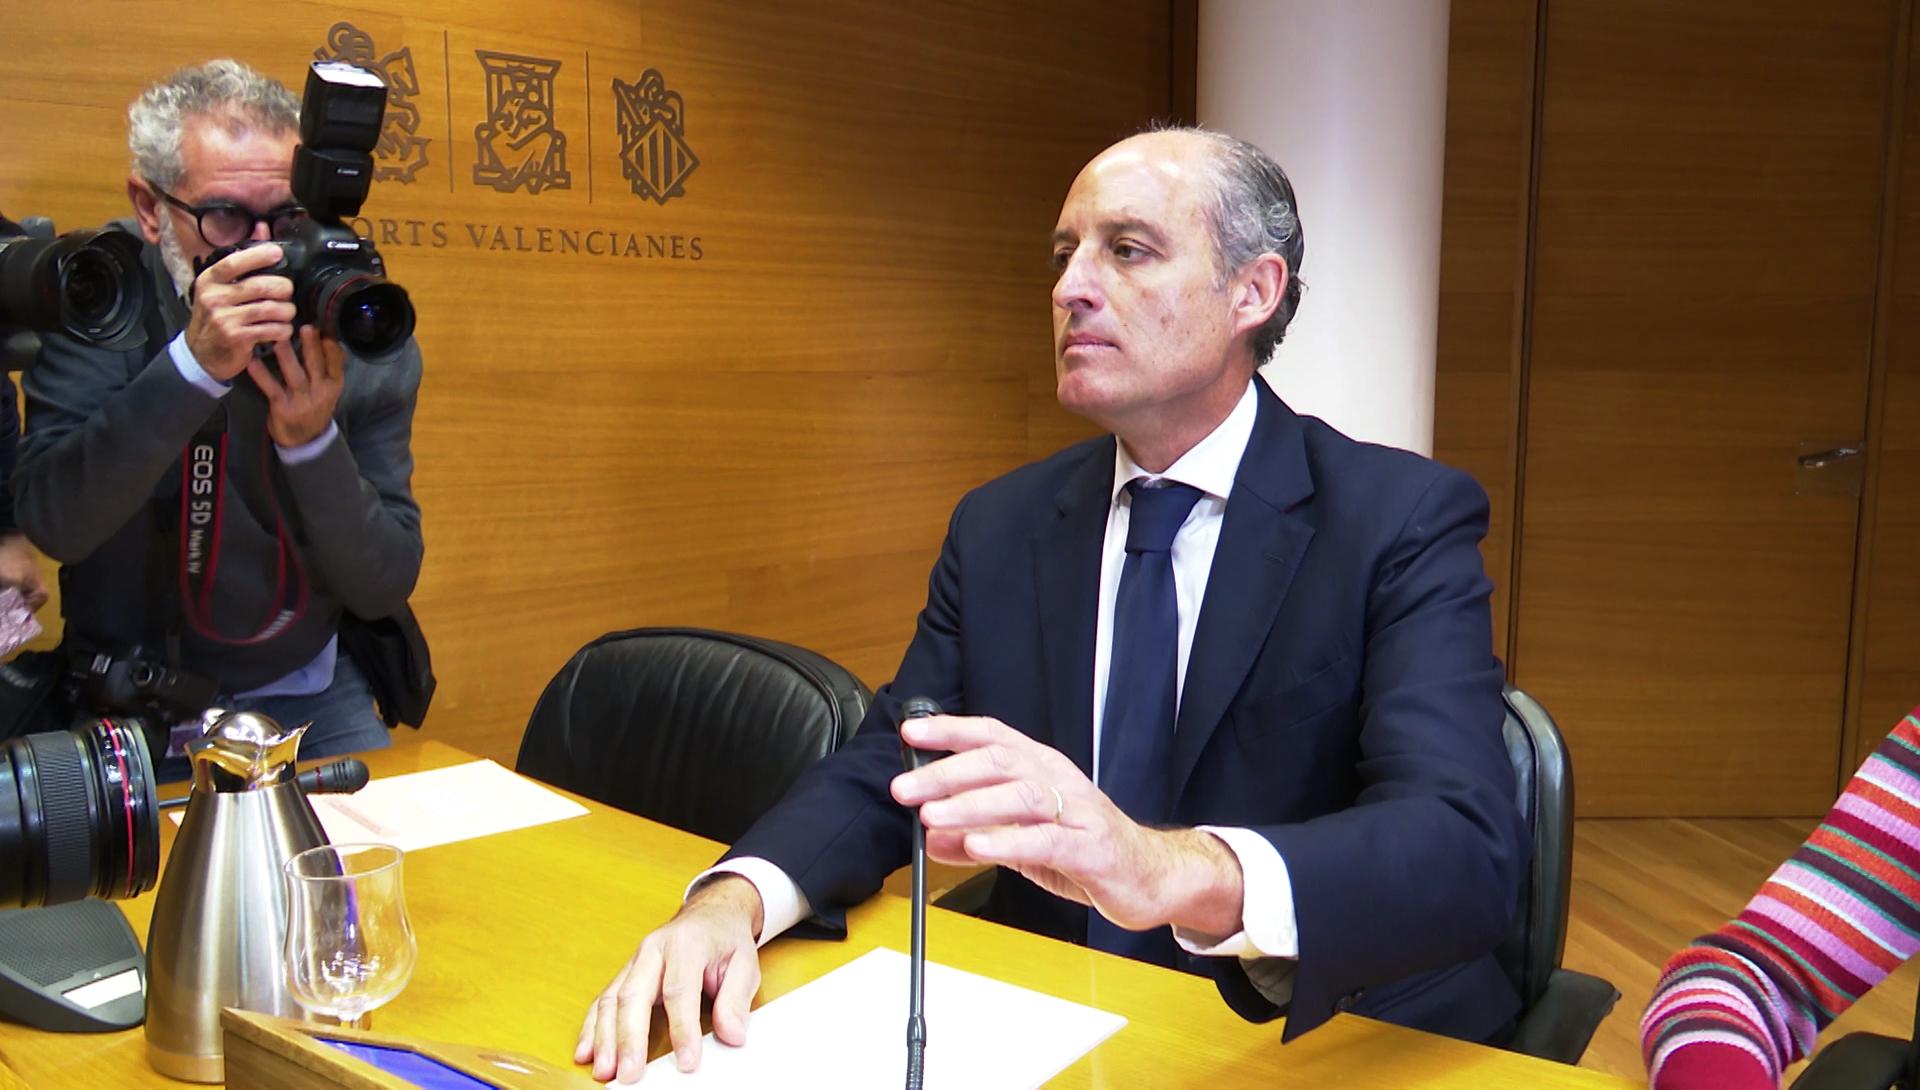 El expresidente de la Comunitat Valenciana Francisco Camps durante su comparecencia sobre el caso Taula en las Cortes Valencianas